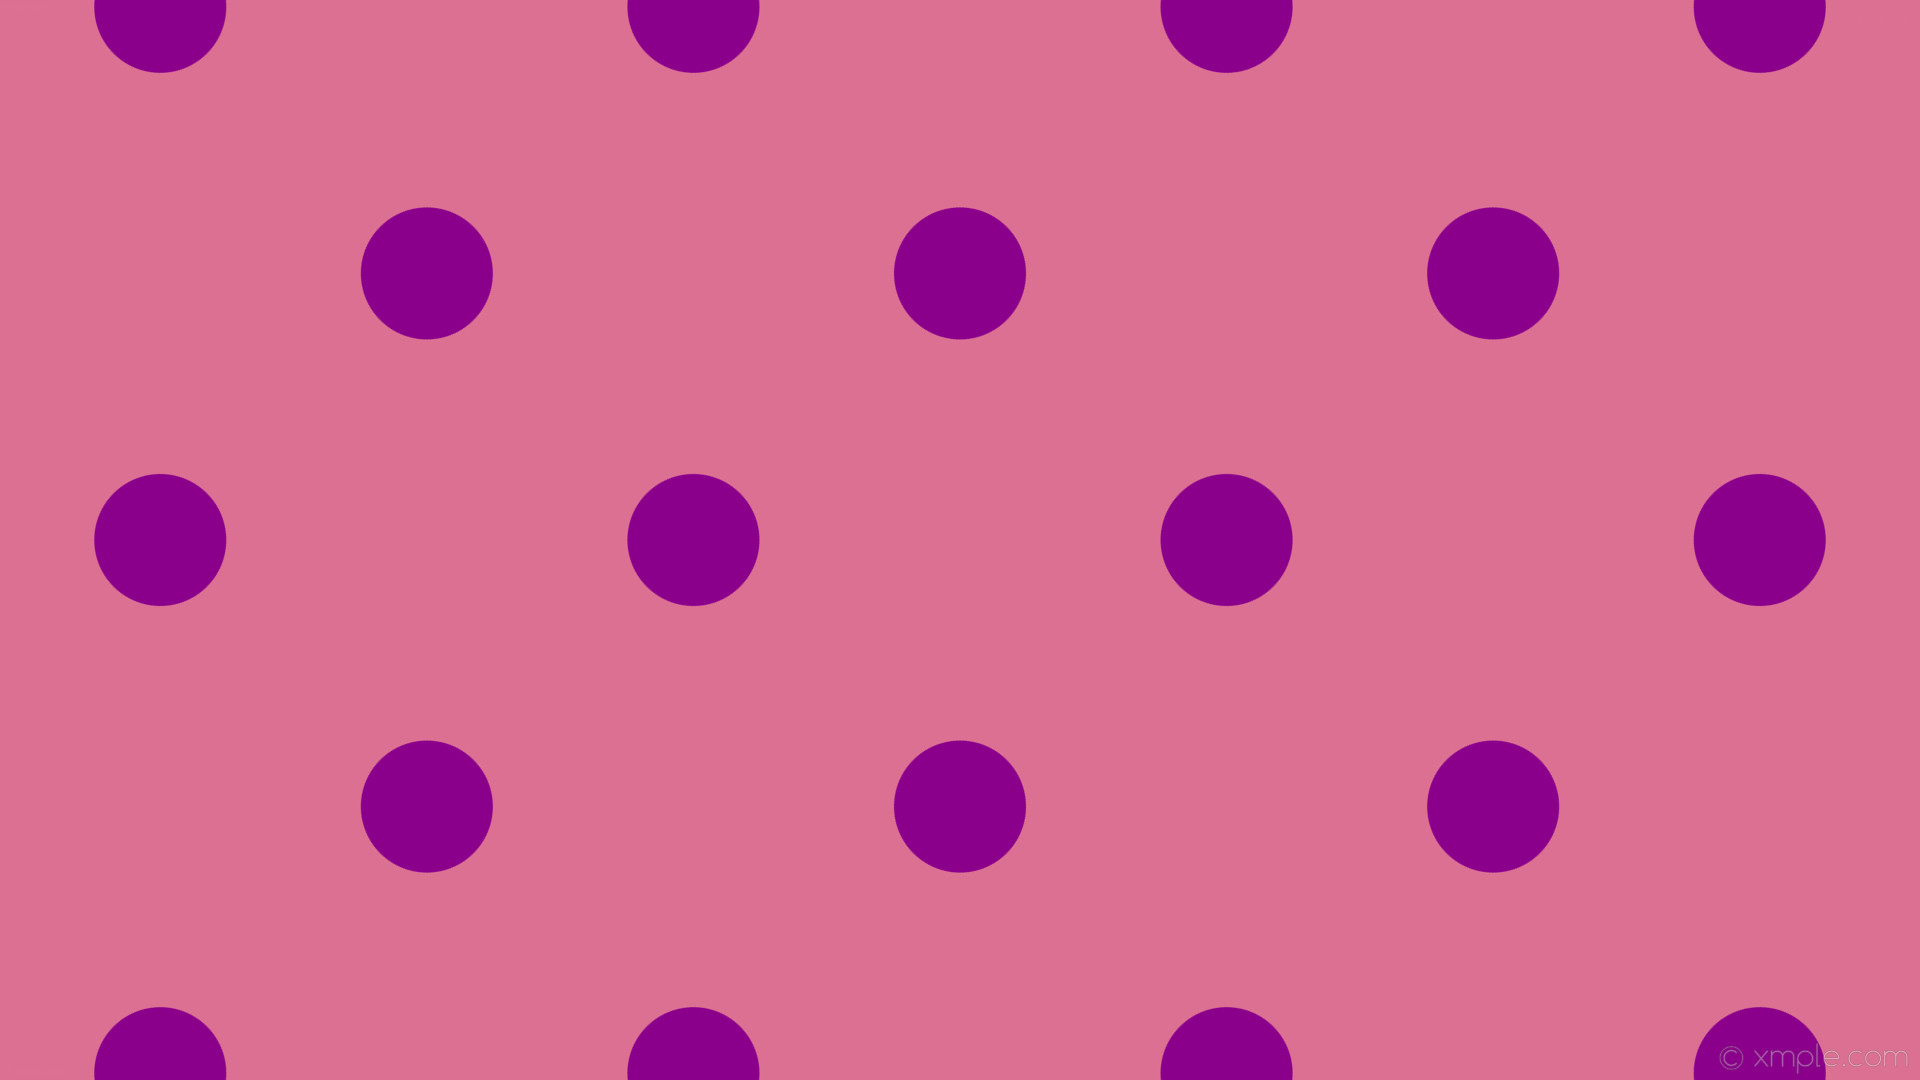 1920x1080 wallpaper spots dots purple pink polka pale violet red dark magenta #db7093  #8b008b 225